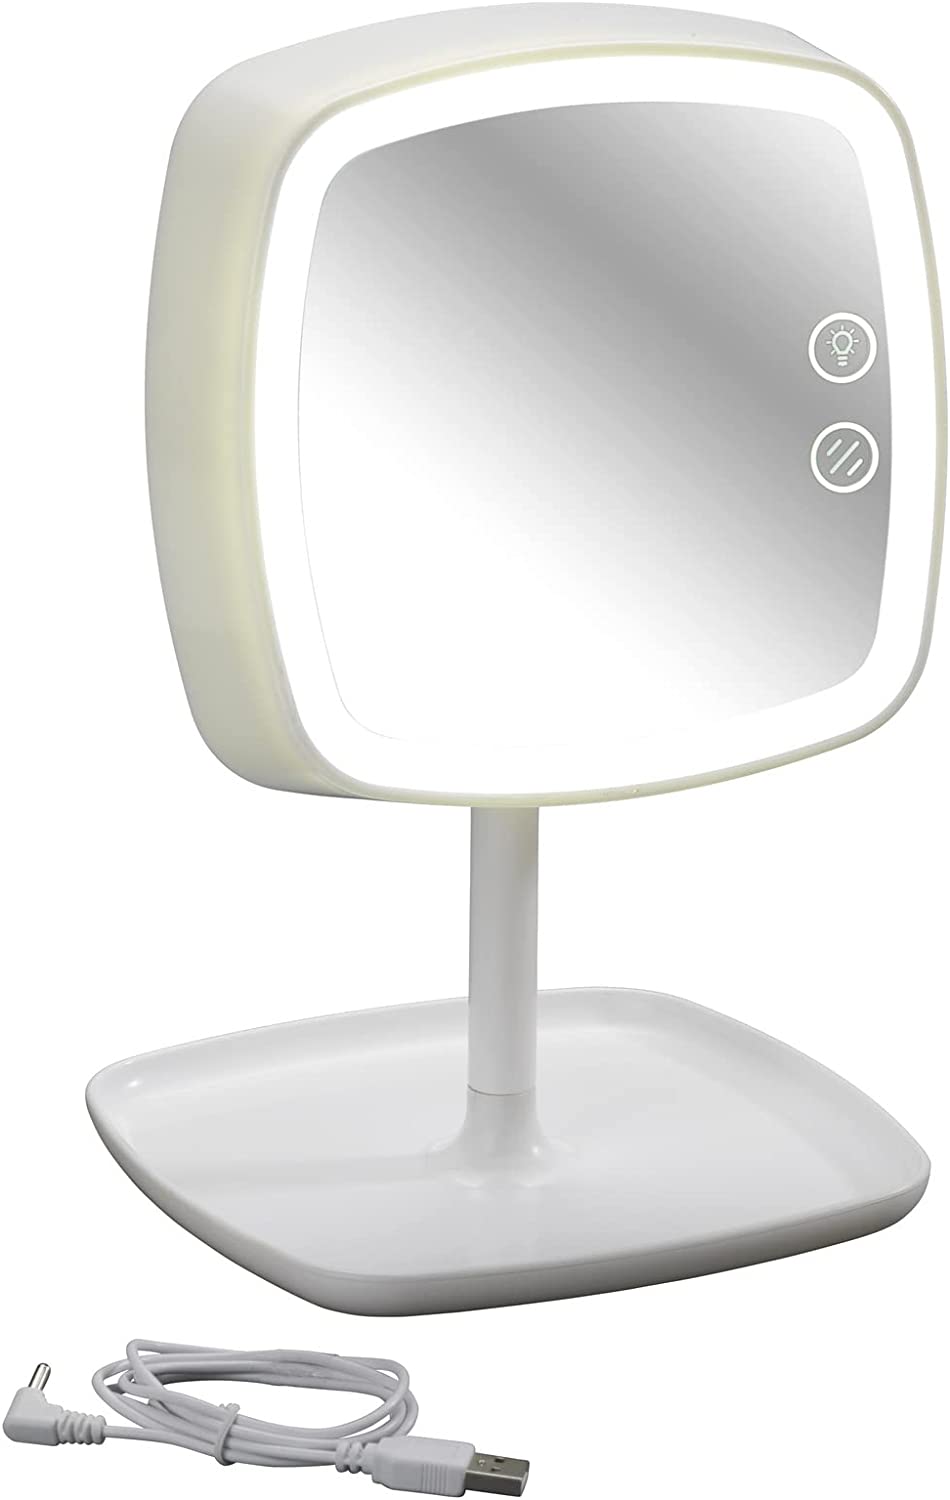 Kosmetikspiegel und Tischleuchte Ostia Make-up-Spiegel, LED Beleuchtung, Acrylnitril-Butadien-Styrol (ABS), Weiß, 18 x 19 x 29 cm